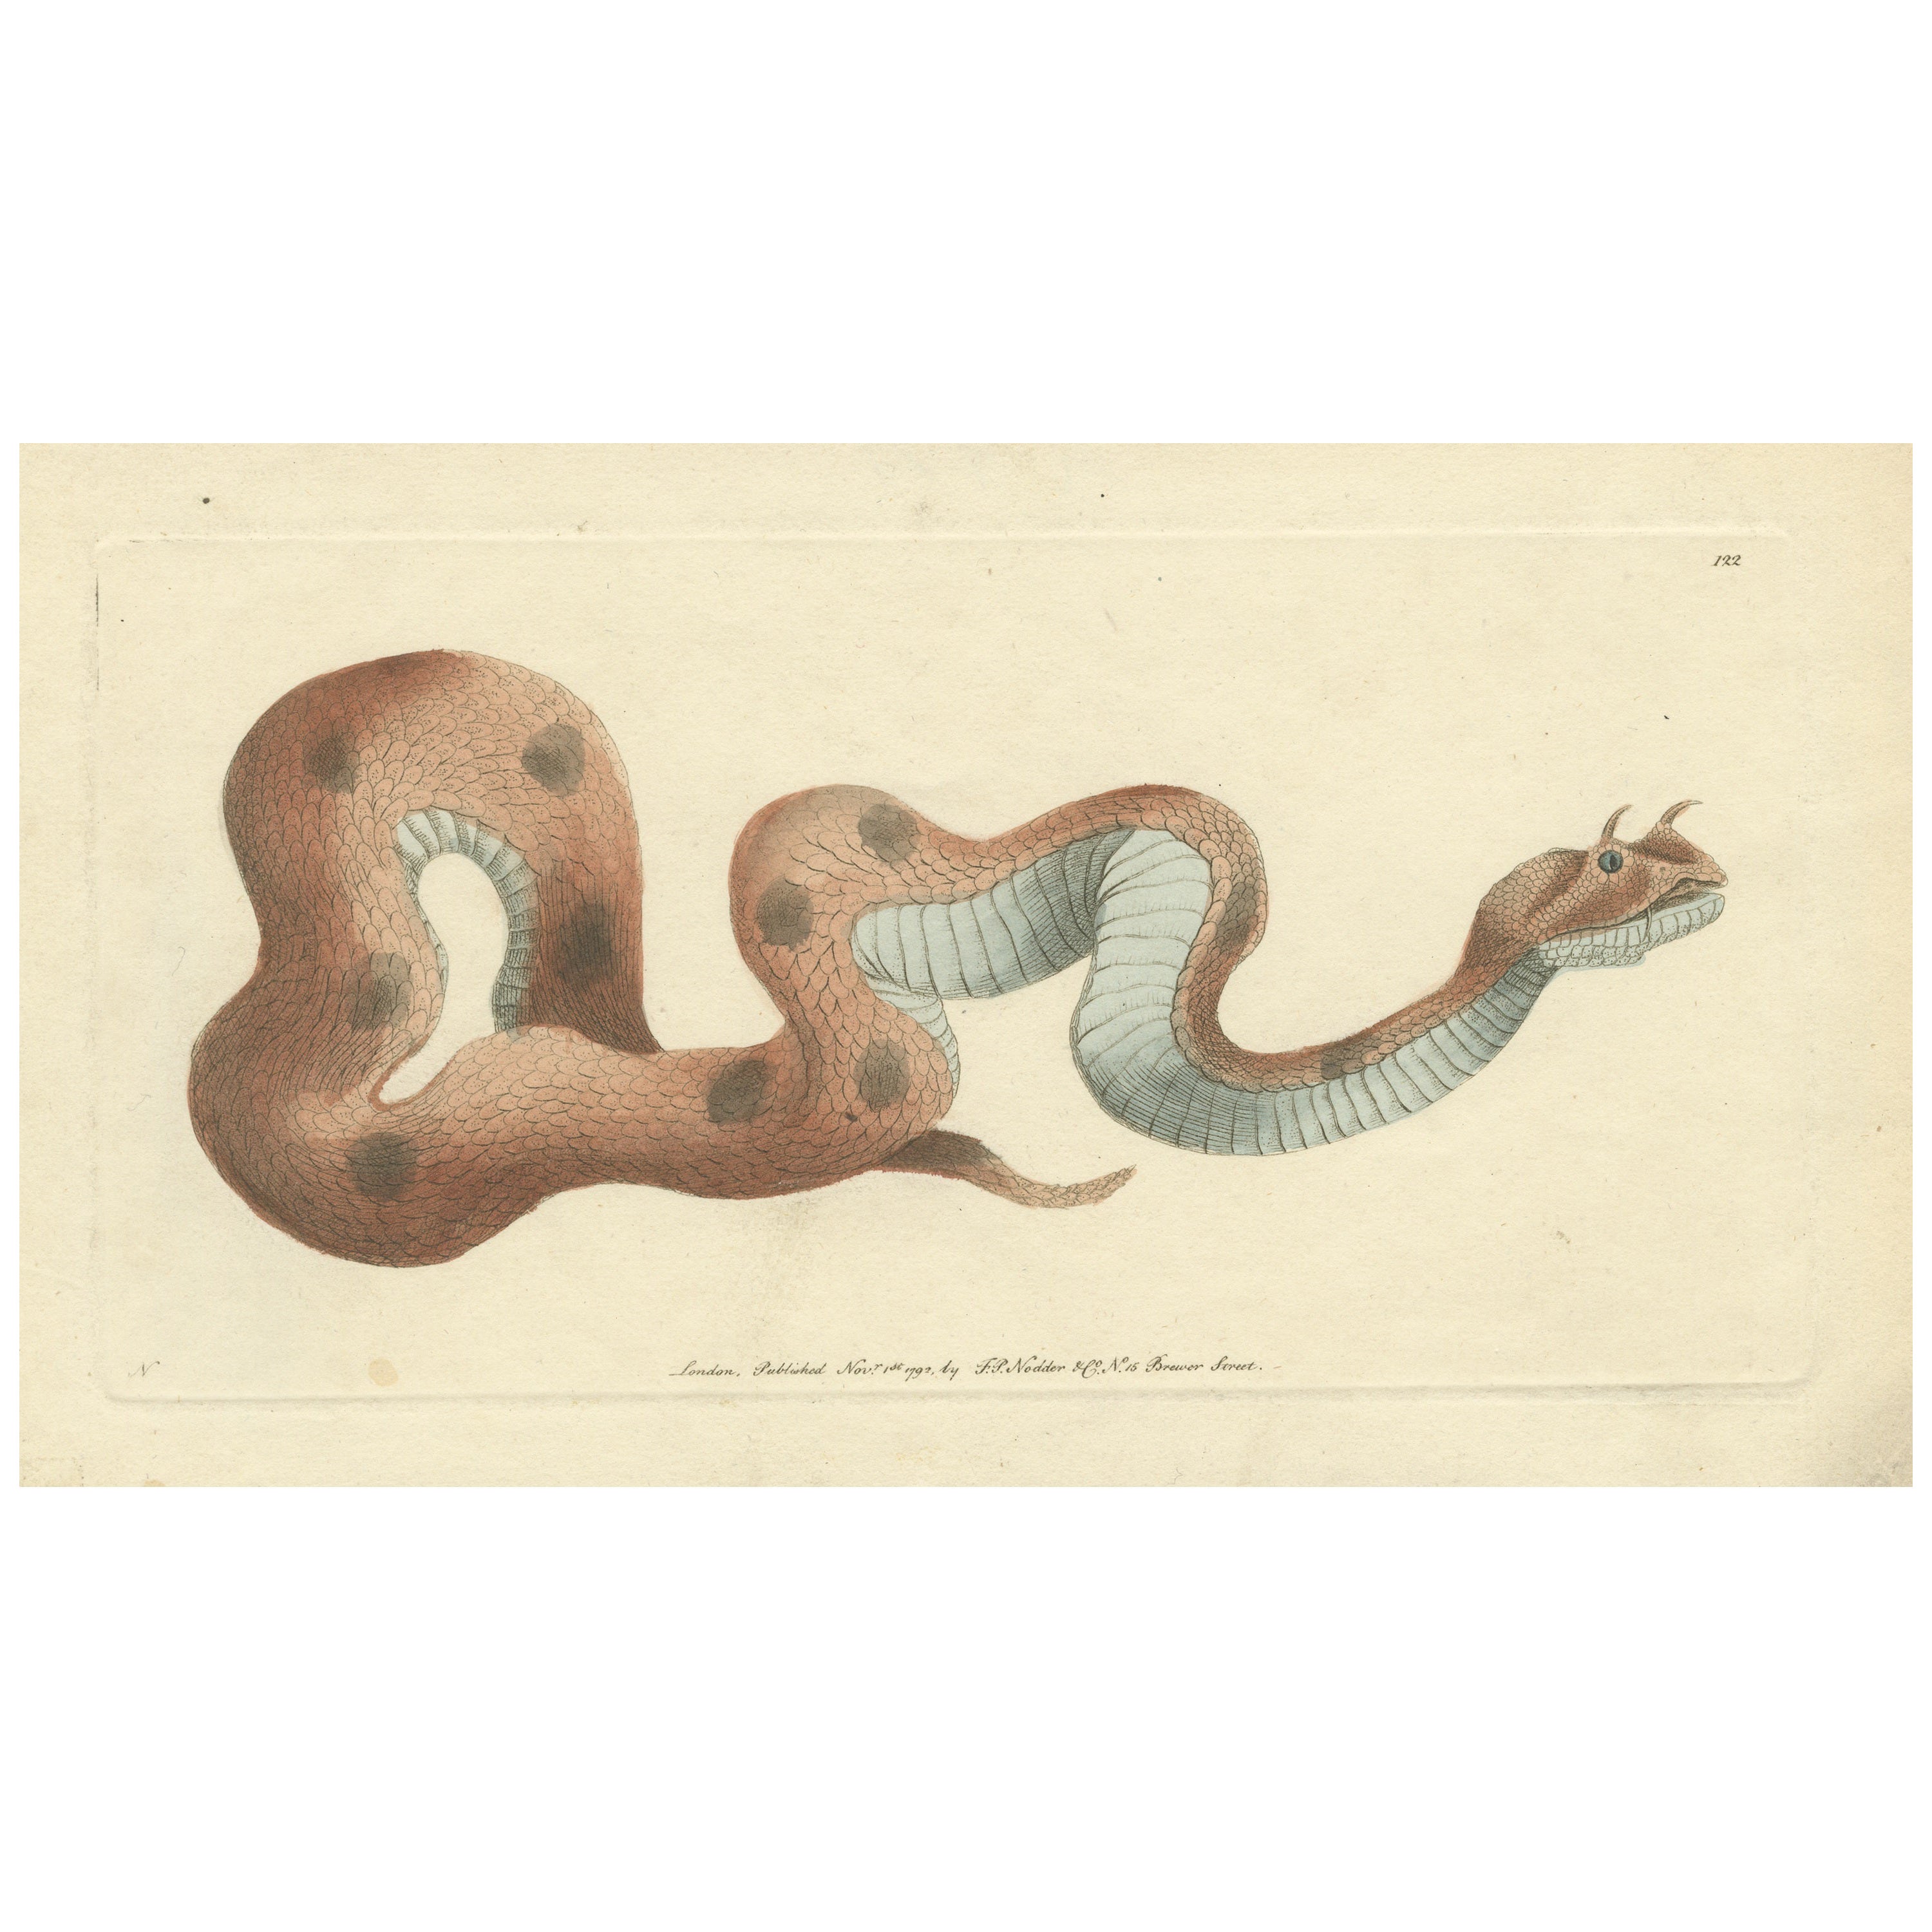 Antique Print of a Saharan or Desert Horned Viper, Cerastes Cerastes